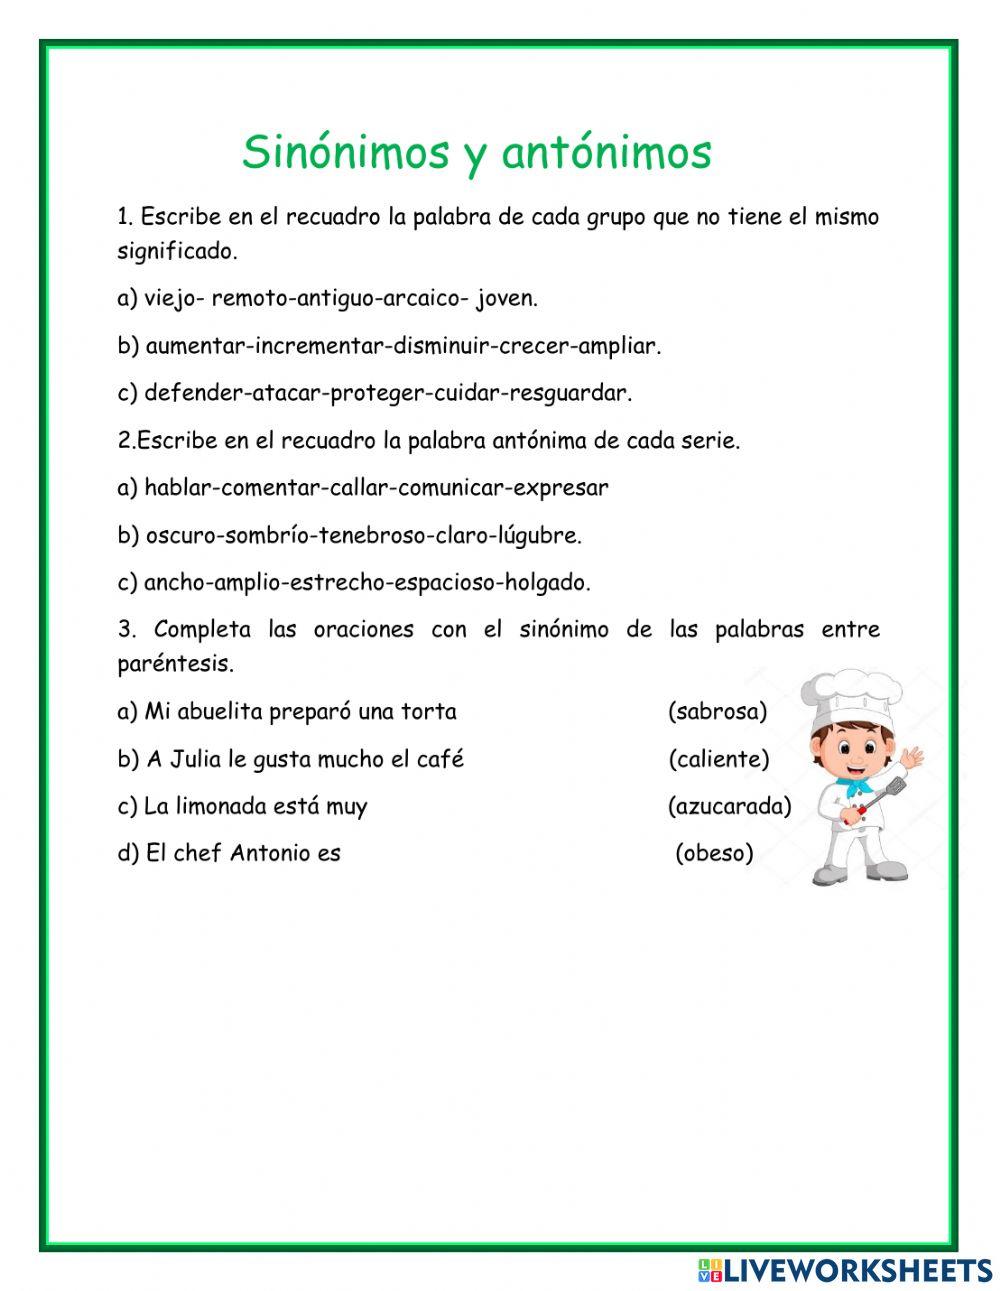 Sinónimos y antónimos online exercise for 3er grado | Live Worksheets